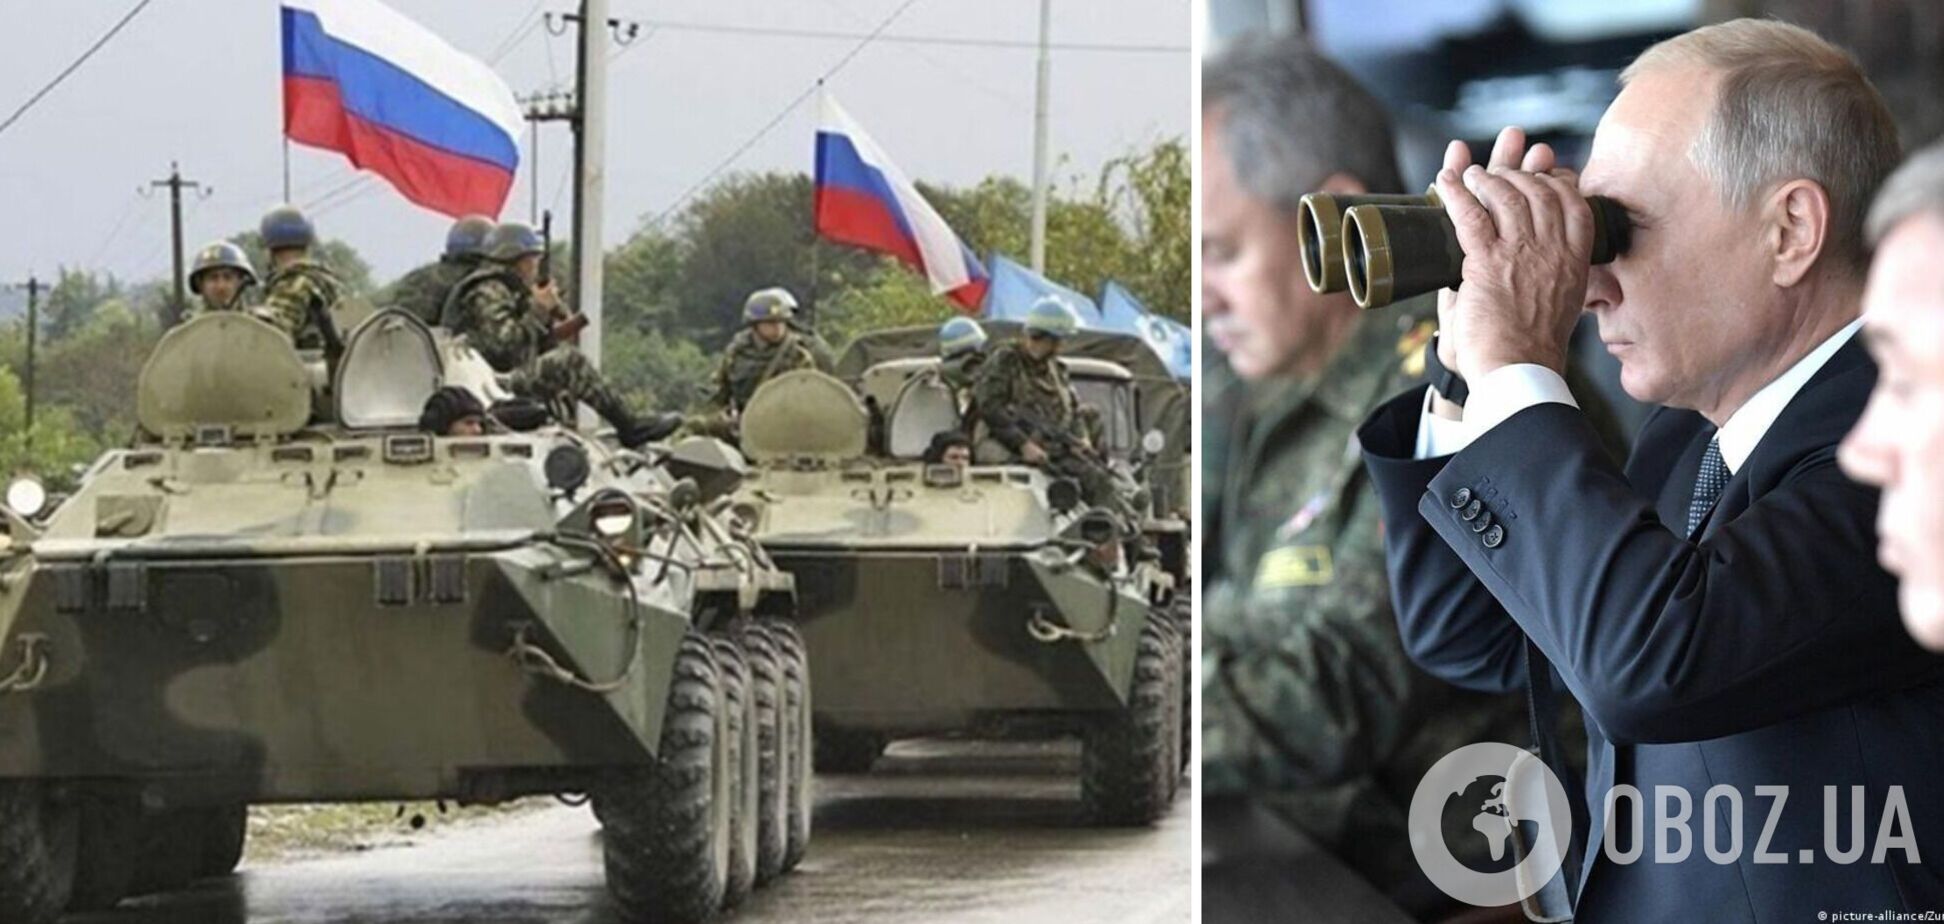 Війна в Україні: нерішучість Заходу створила для РФ можливість нового наступу – ISW

